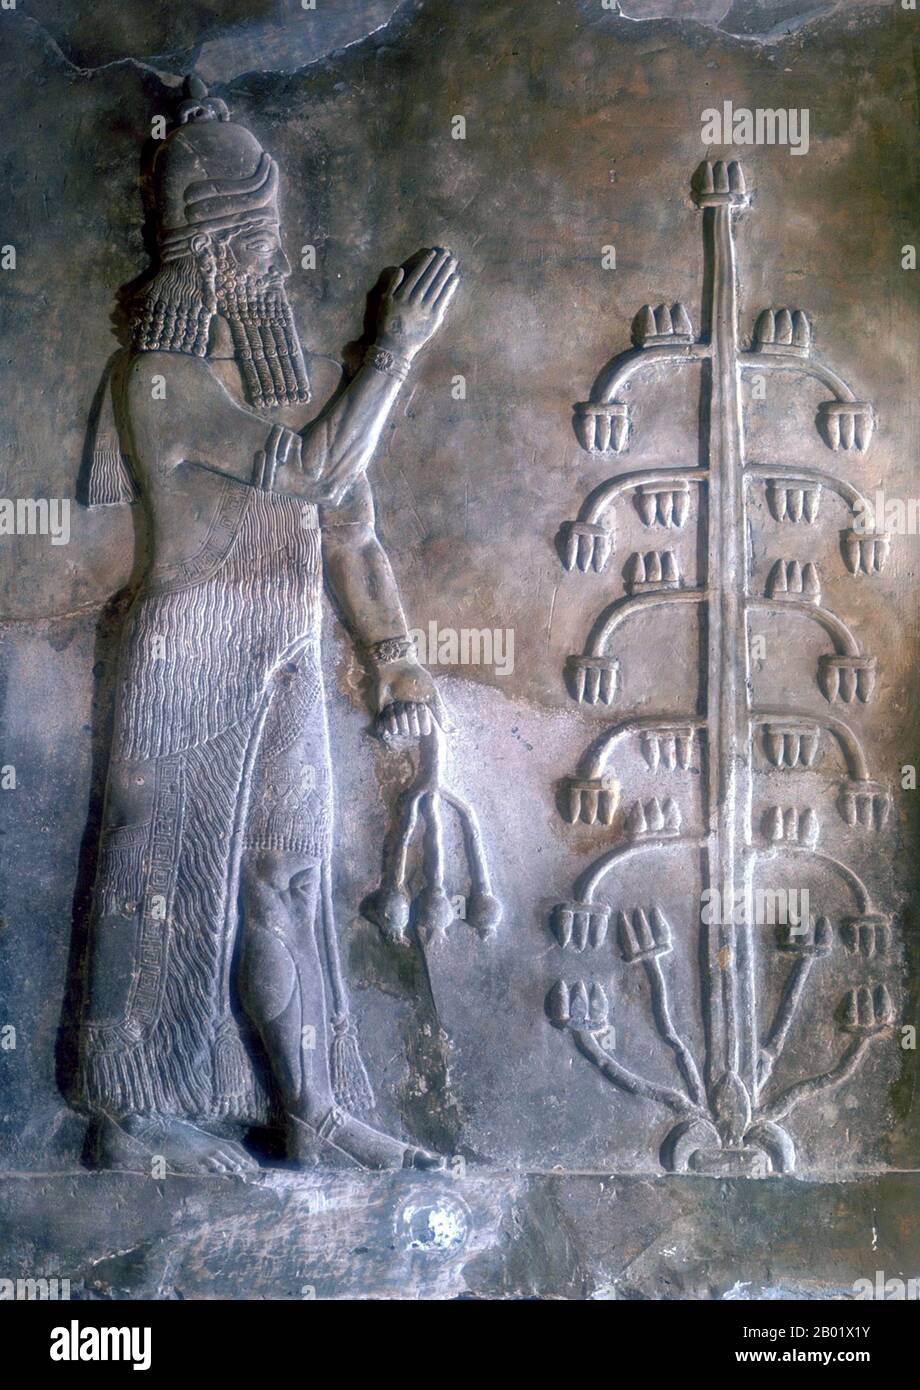 Irak: Dschinn mit Mohnblume. BAS-Relief aus dem Palast von Sargon II. (Ca. 770–705 v. Chr.), Dur Sharrukin in Assyrien (Chorsabad), ca. 716-713 v. Chr. Sargon II. Regierte als König des Neo-Assyrischen Reiches von 722 v. Chr. bis zu seinem Tod in der Schlacht 705 v. Chr. Er kam wahrscheinlich an die Macht, nachdem er seinen Bruder Shalmaneser V. gestürzt und die Sargoniden-Dynastie gegründet hatte. Er nahm seinen regierenden Namen nach dem alten Eroberer Sargon von Akkad an und erweiterte Assyrisches Territorium als mächtiger Krieger-König und Militärstratege, führte seine Truppen persönlich in die Schlacht und besiegte alle seine großen Feinde während seiner Herrschaft. Stockfoto